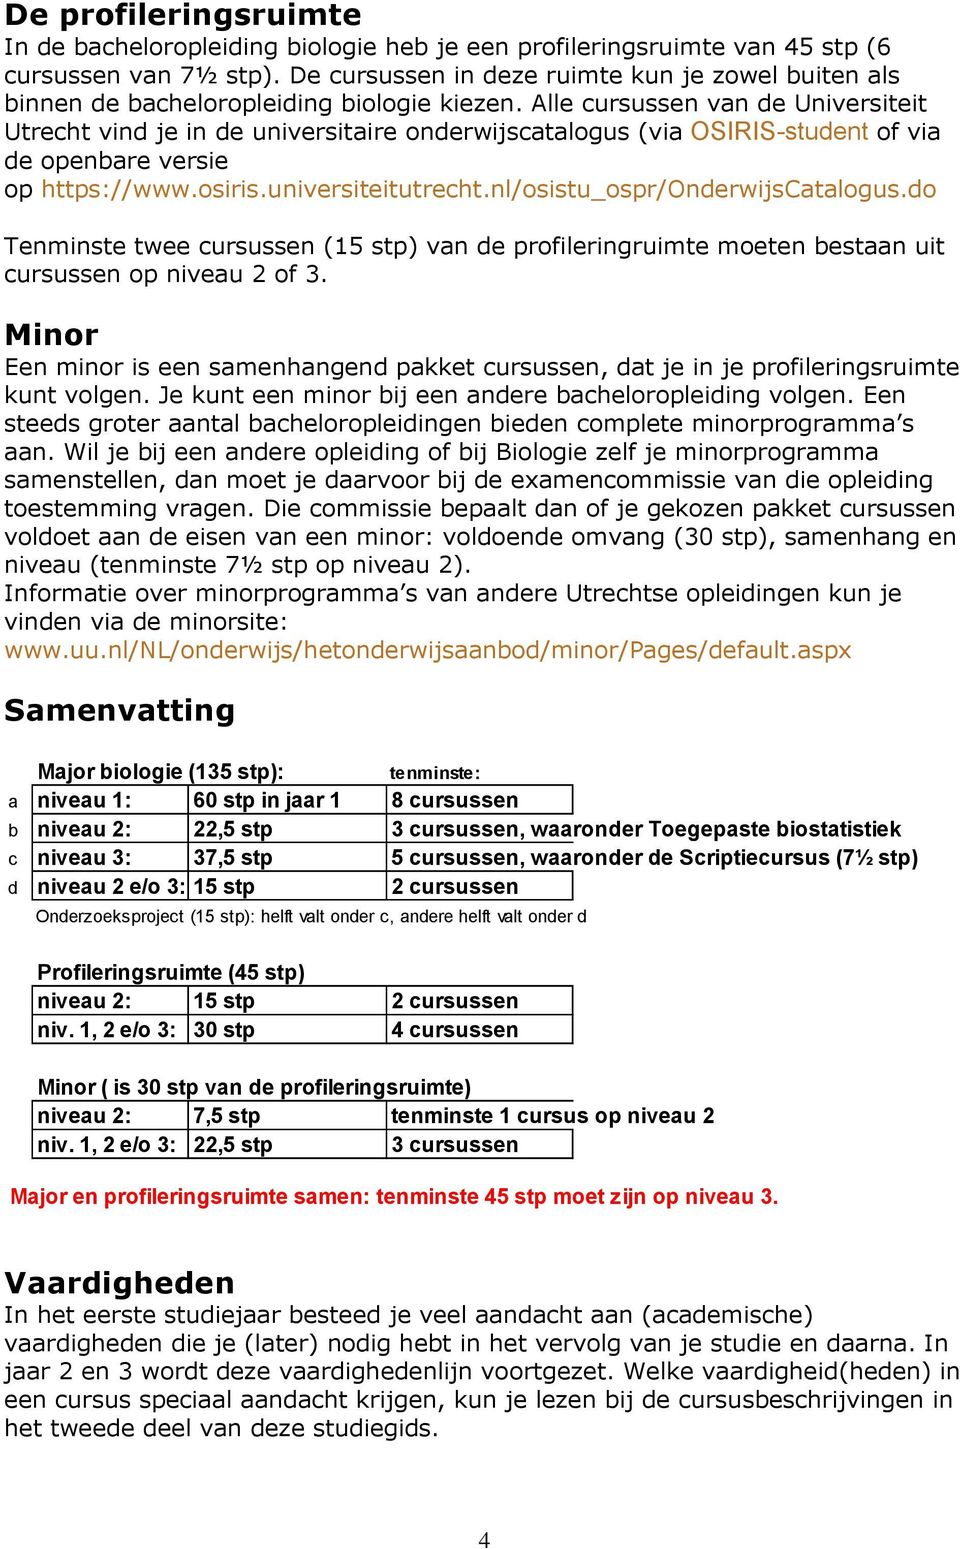 Alle cursussen van de Universiteit Utrecht vind je in de universitaire onderwijscatalogus (via HOSIRIS-student of via de openbare versie op Hhttps://www.osiris.universiteitutrecht.